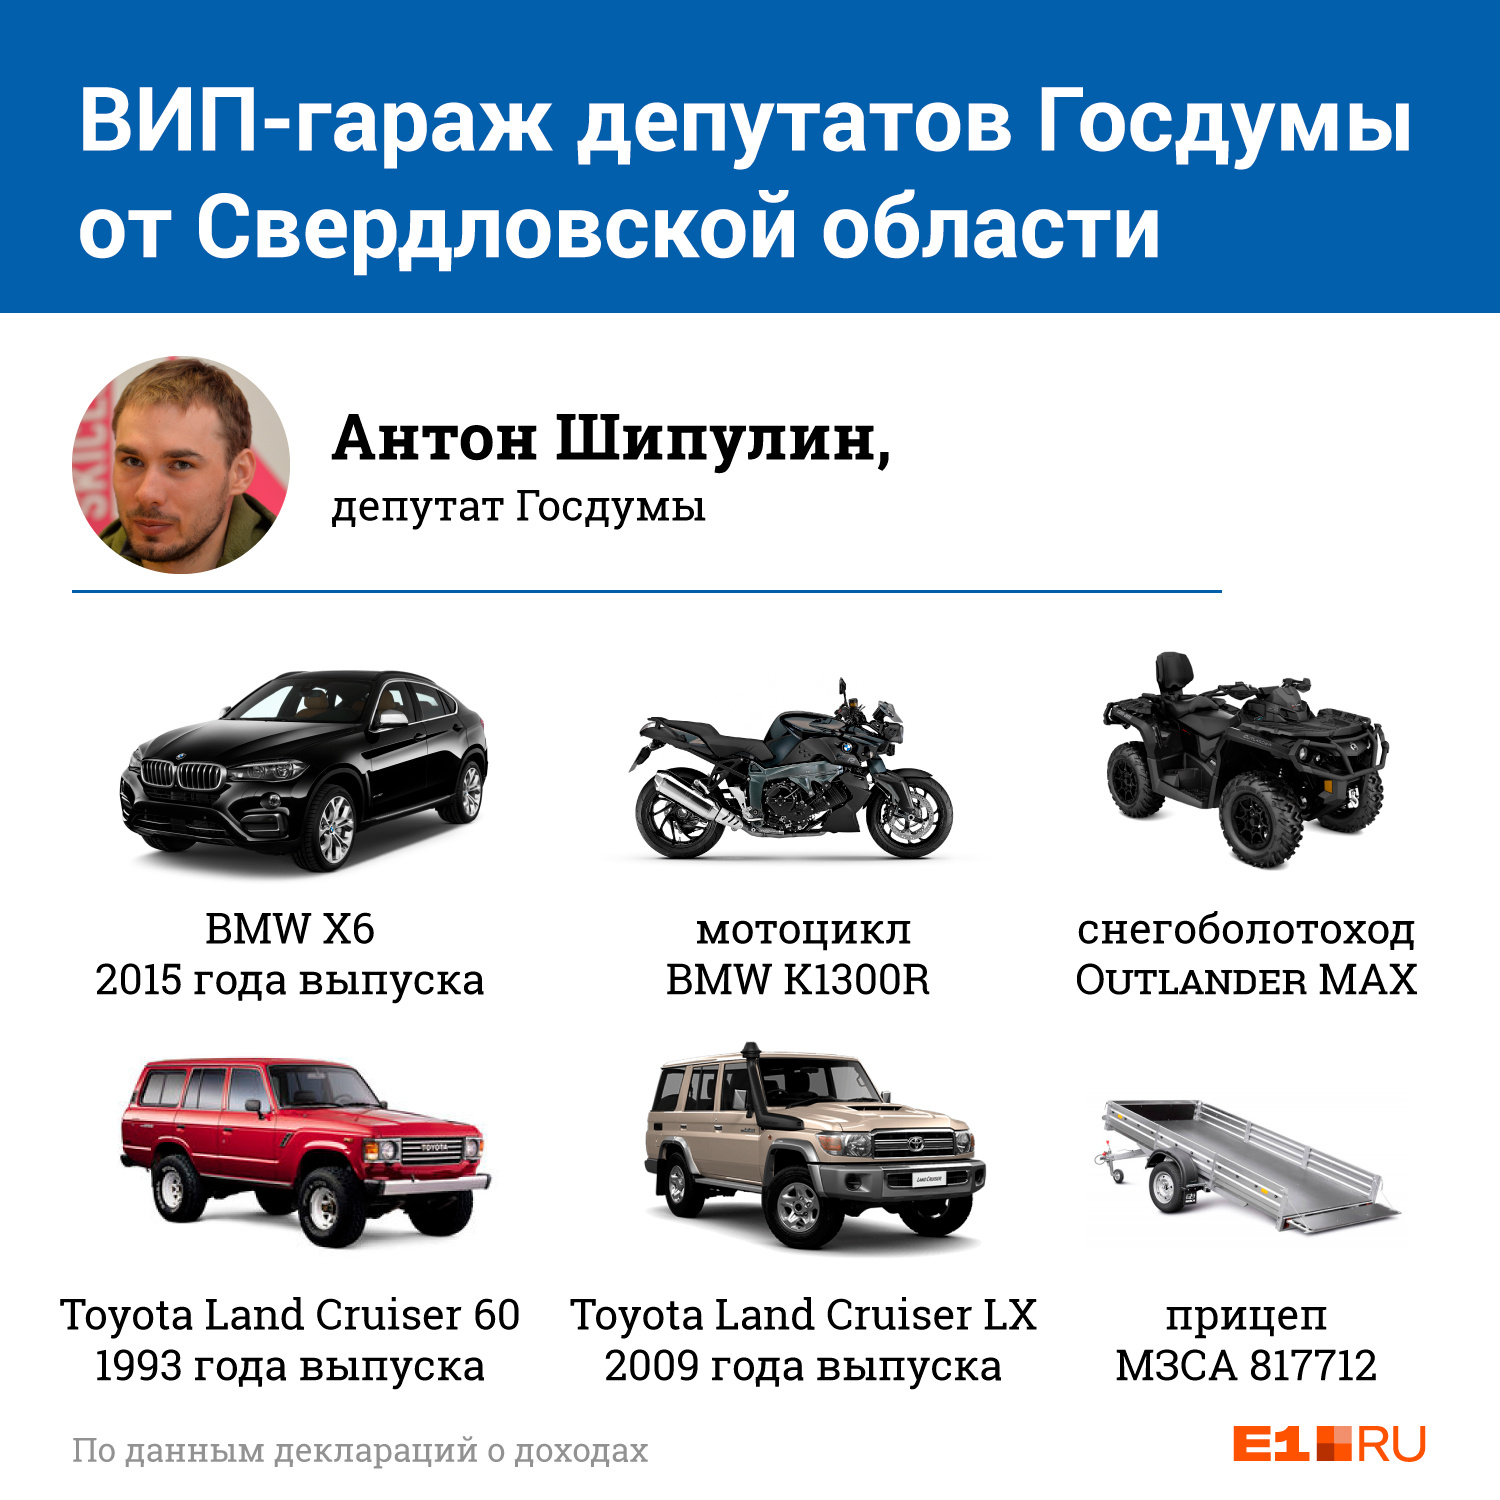 Антон Шипулин пока еще молодой депутат, а потому не скрывает, какие машины есть у него 